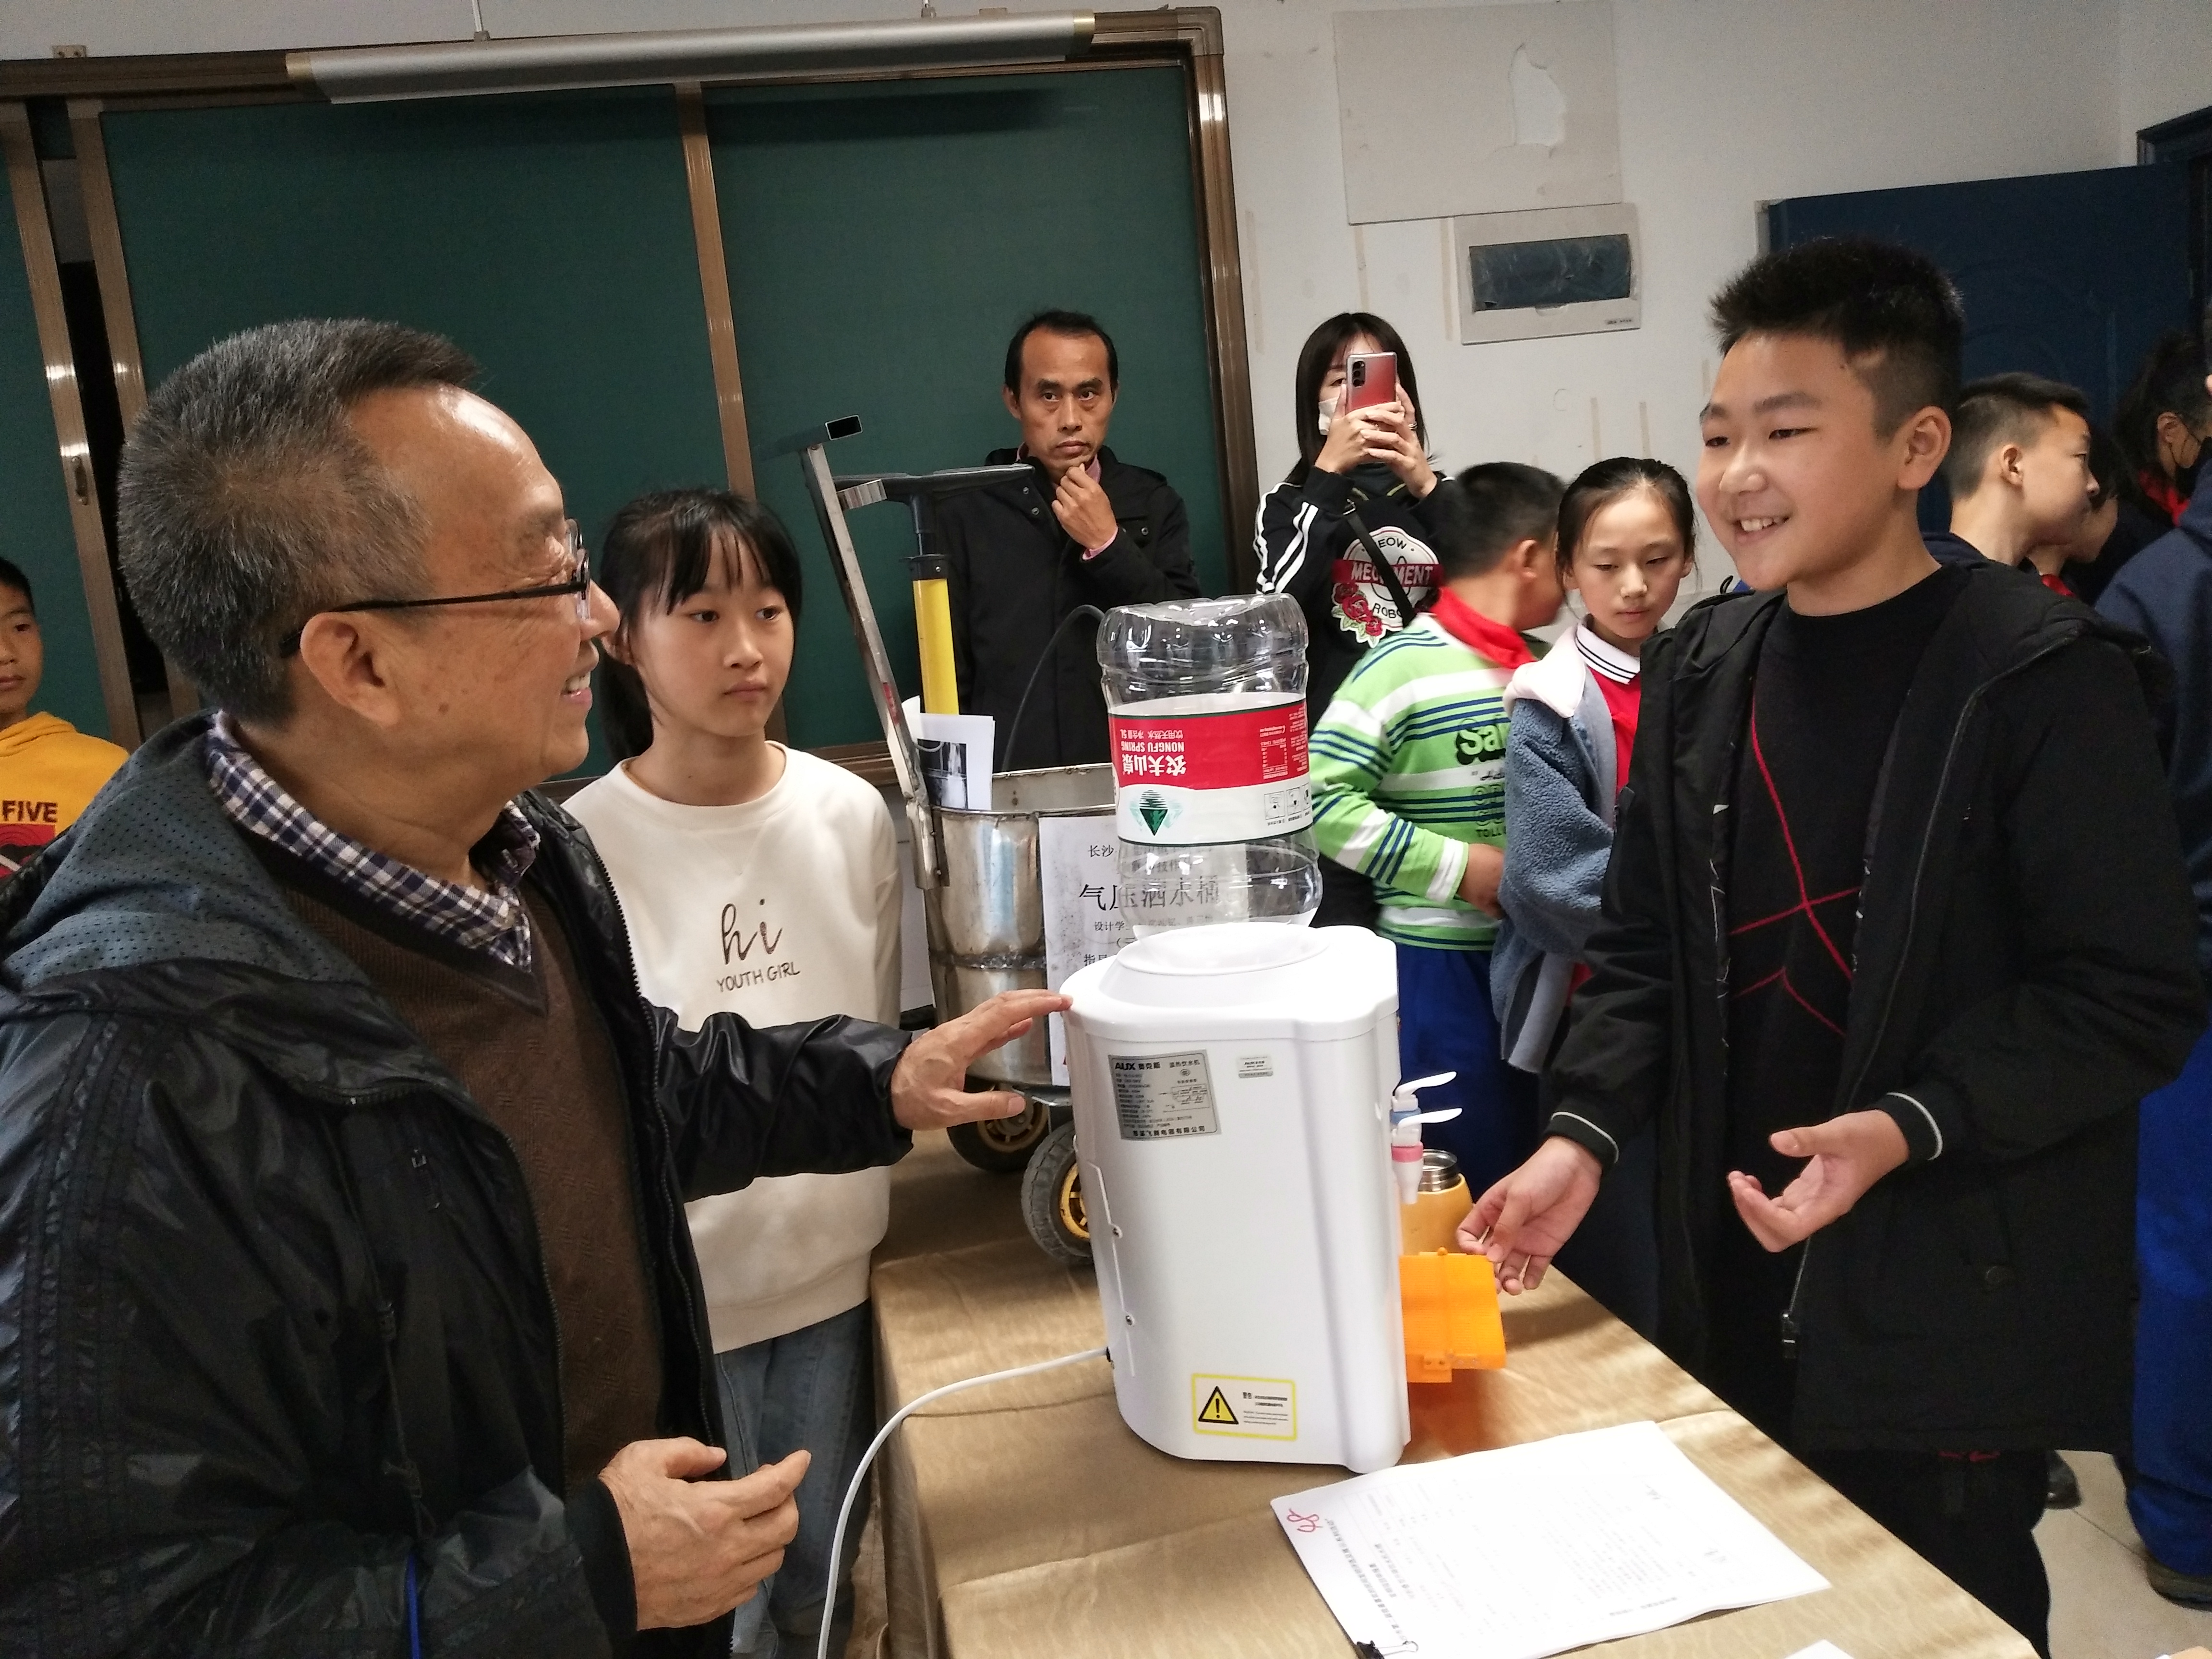 长郡月亮岛学校学生唐炜彬在介绍自己的发明“可折叠型升降饮水机水槽”。长沙晚报全媒体记者 徐运源 摄